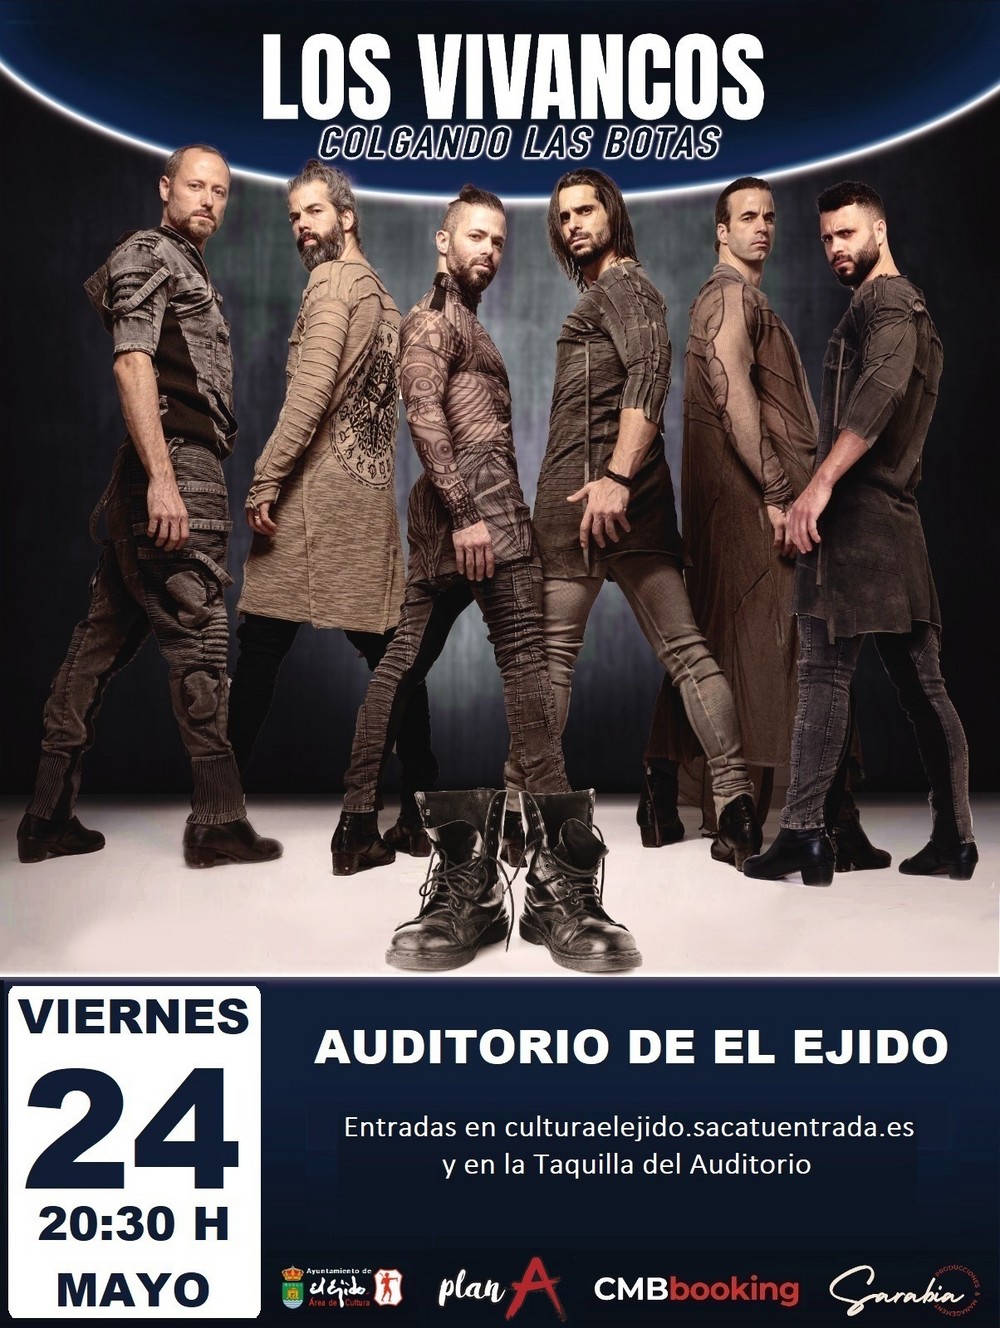 Los Vivancos, un adiós inolvidable, con ‘Colgando las botas’ en el Festival de Teatro de El Ejido